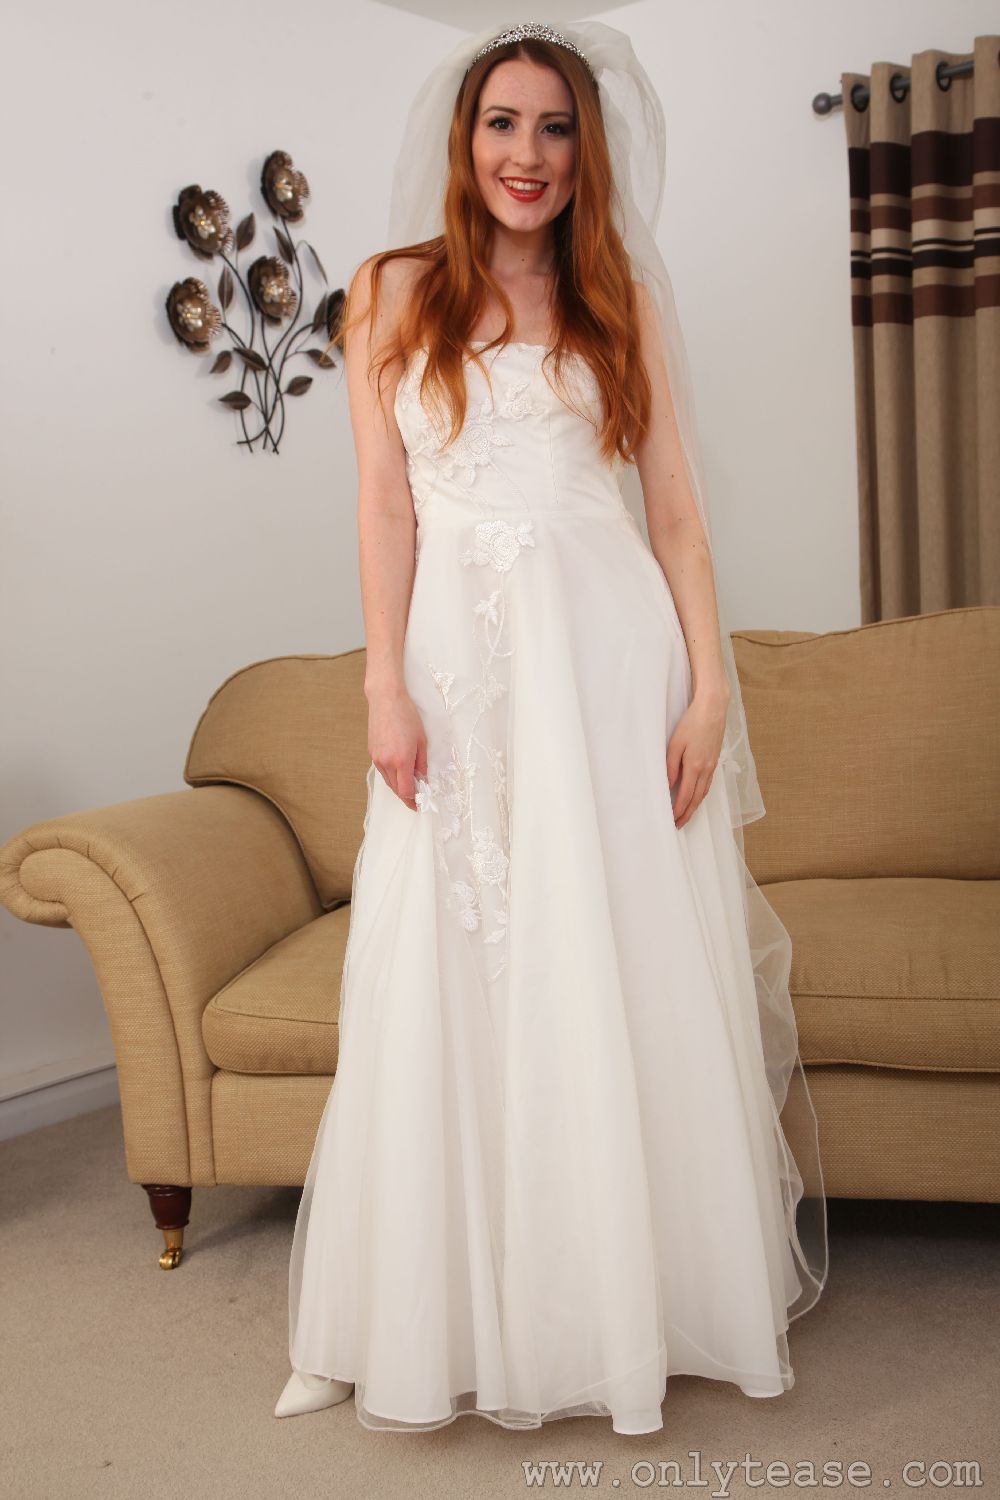 Scarlot Rose в свадебном платье и белых чулках